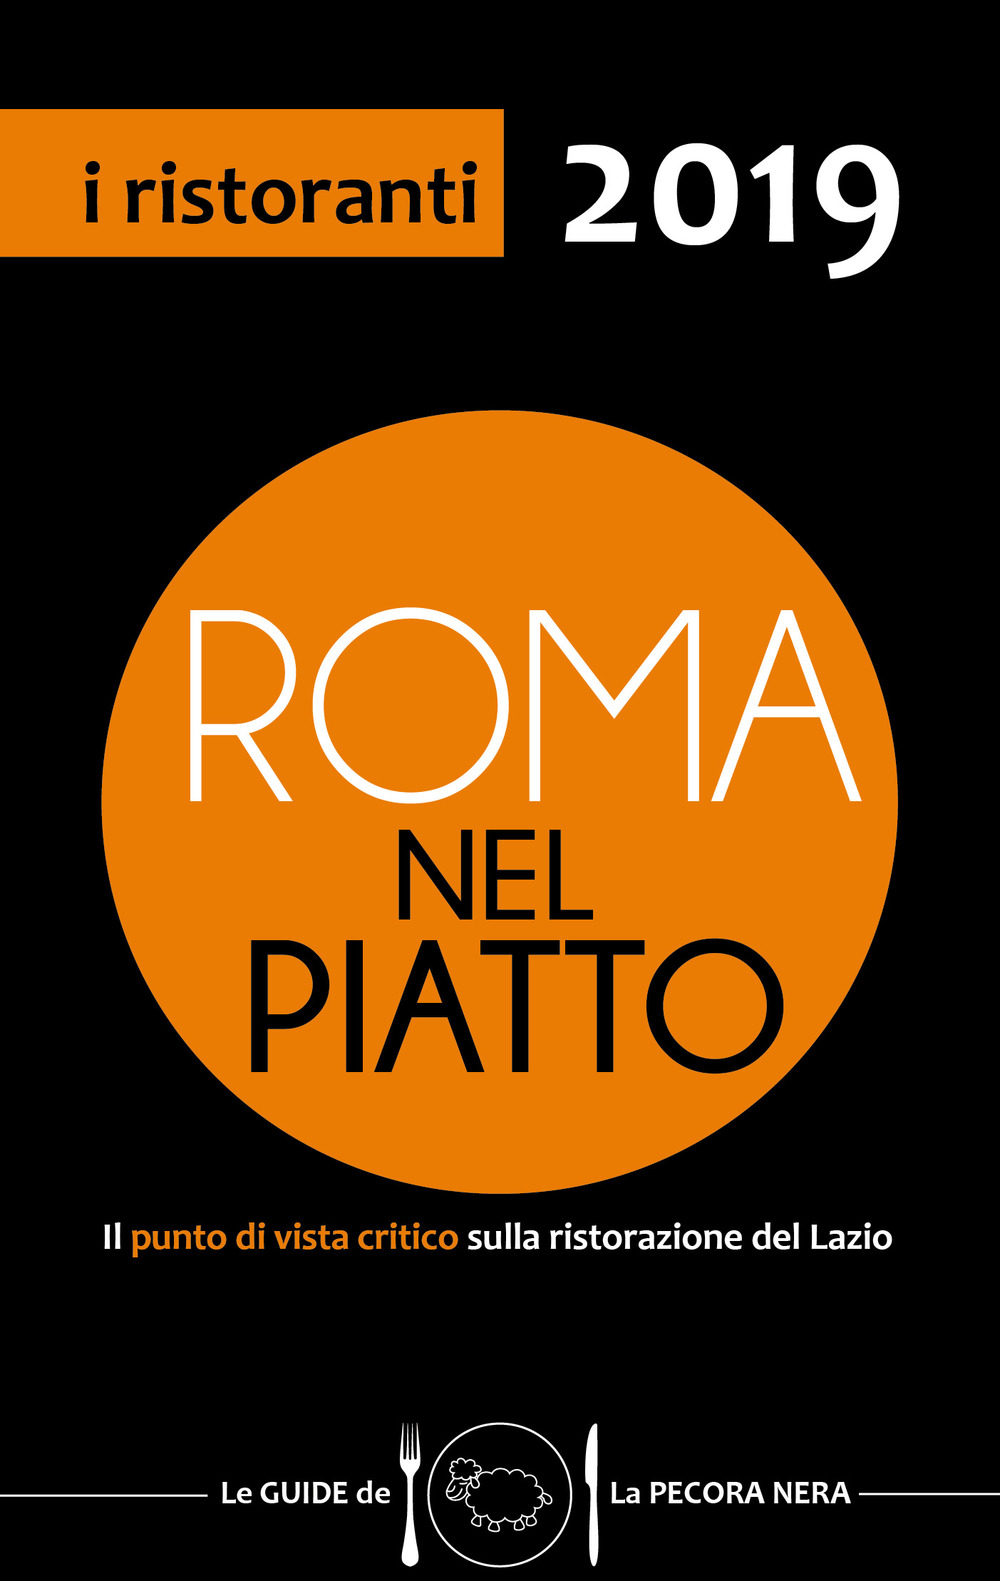 Roma nel piatto 2019. Il punto di vista critico sulla ristorazione del Lazio